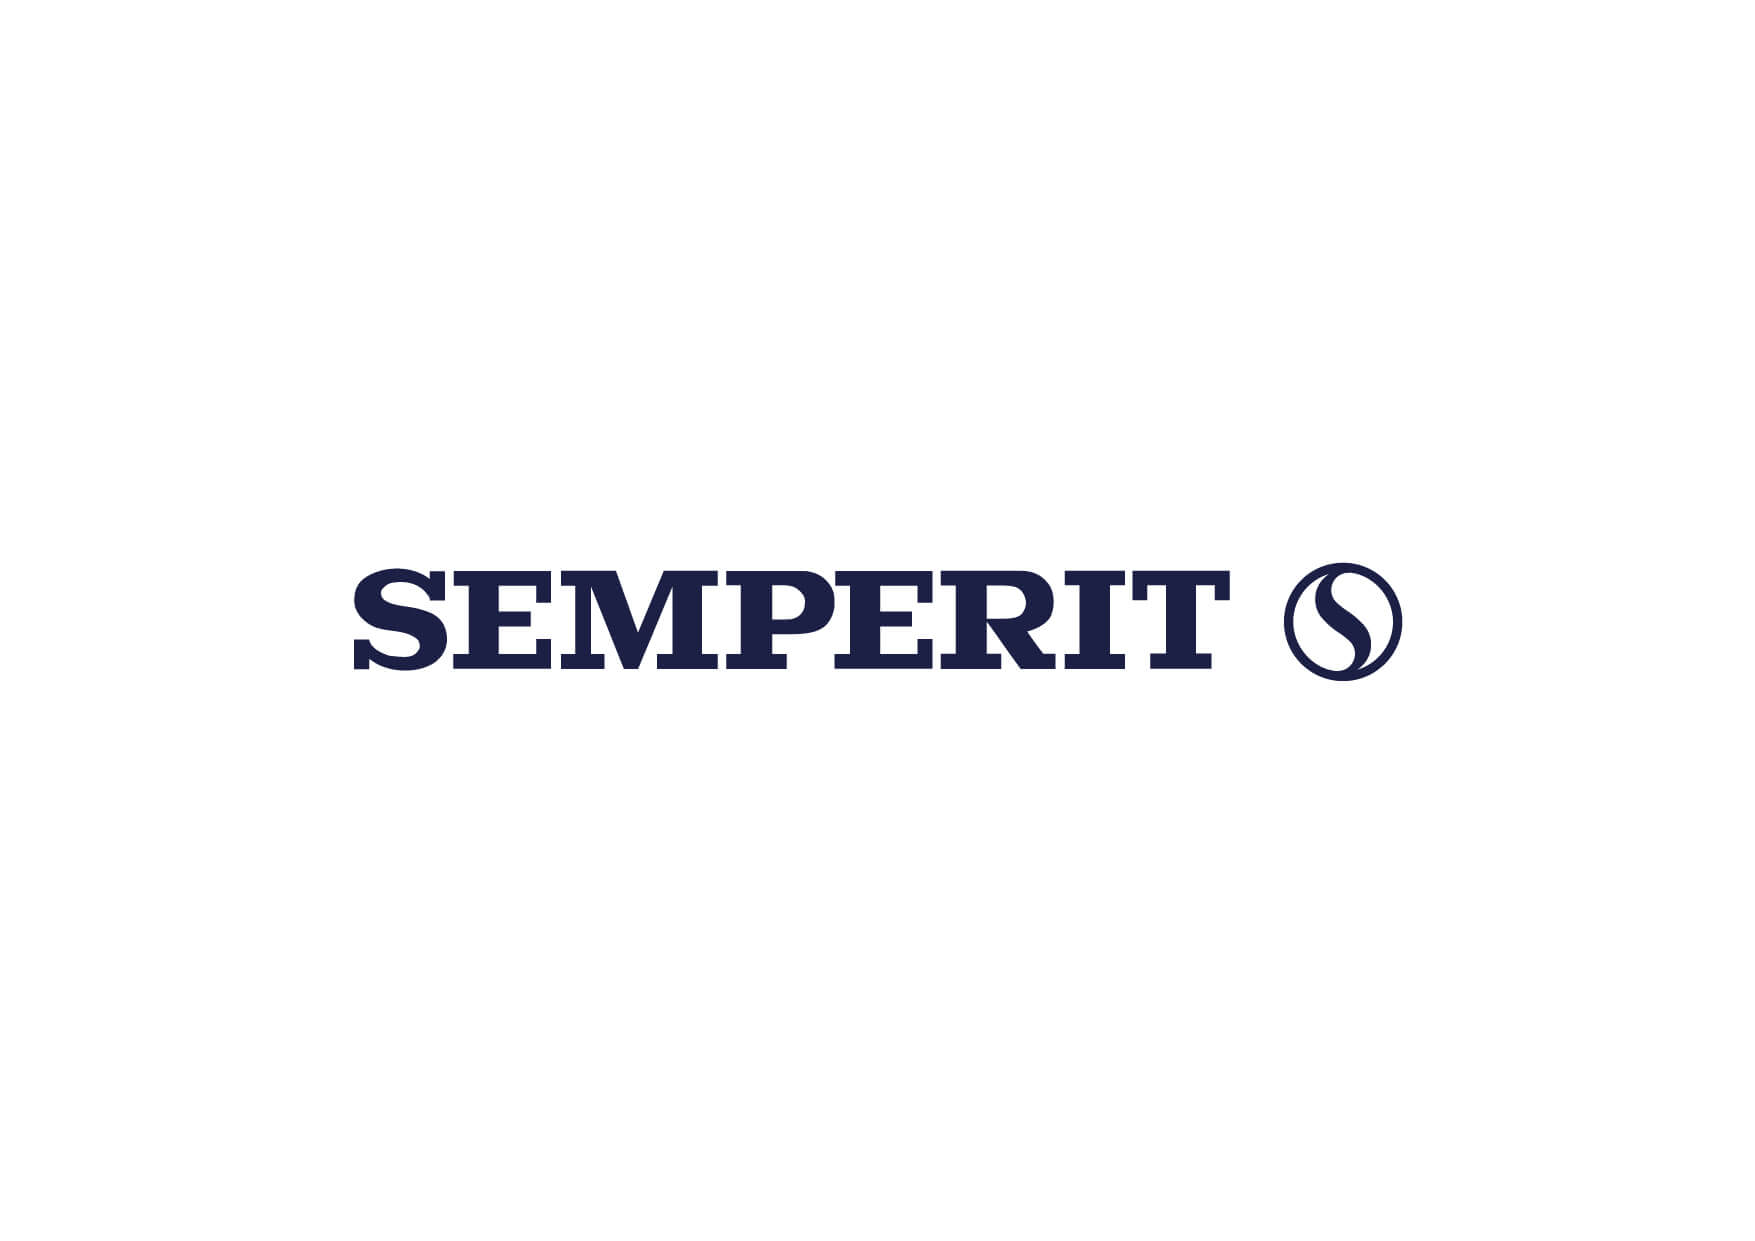 Semperit Logo softlaunch RGB